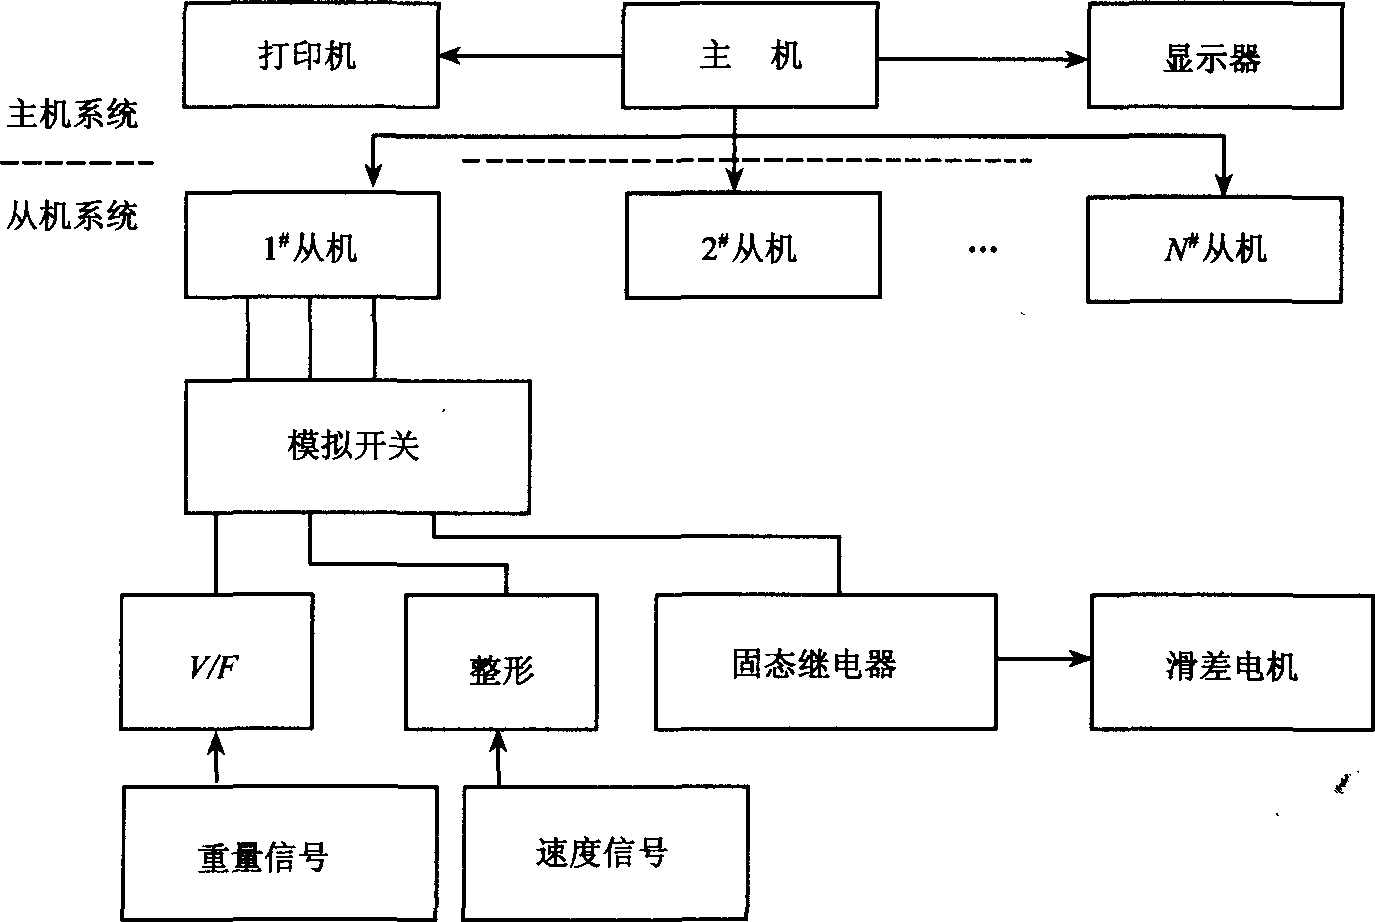 配料系统结构图